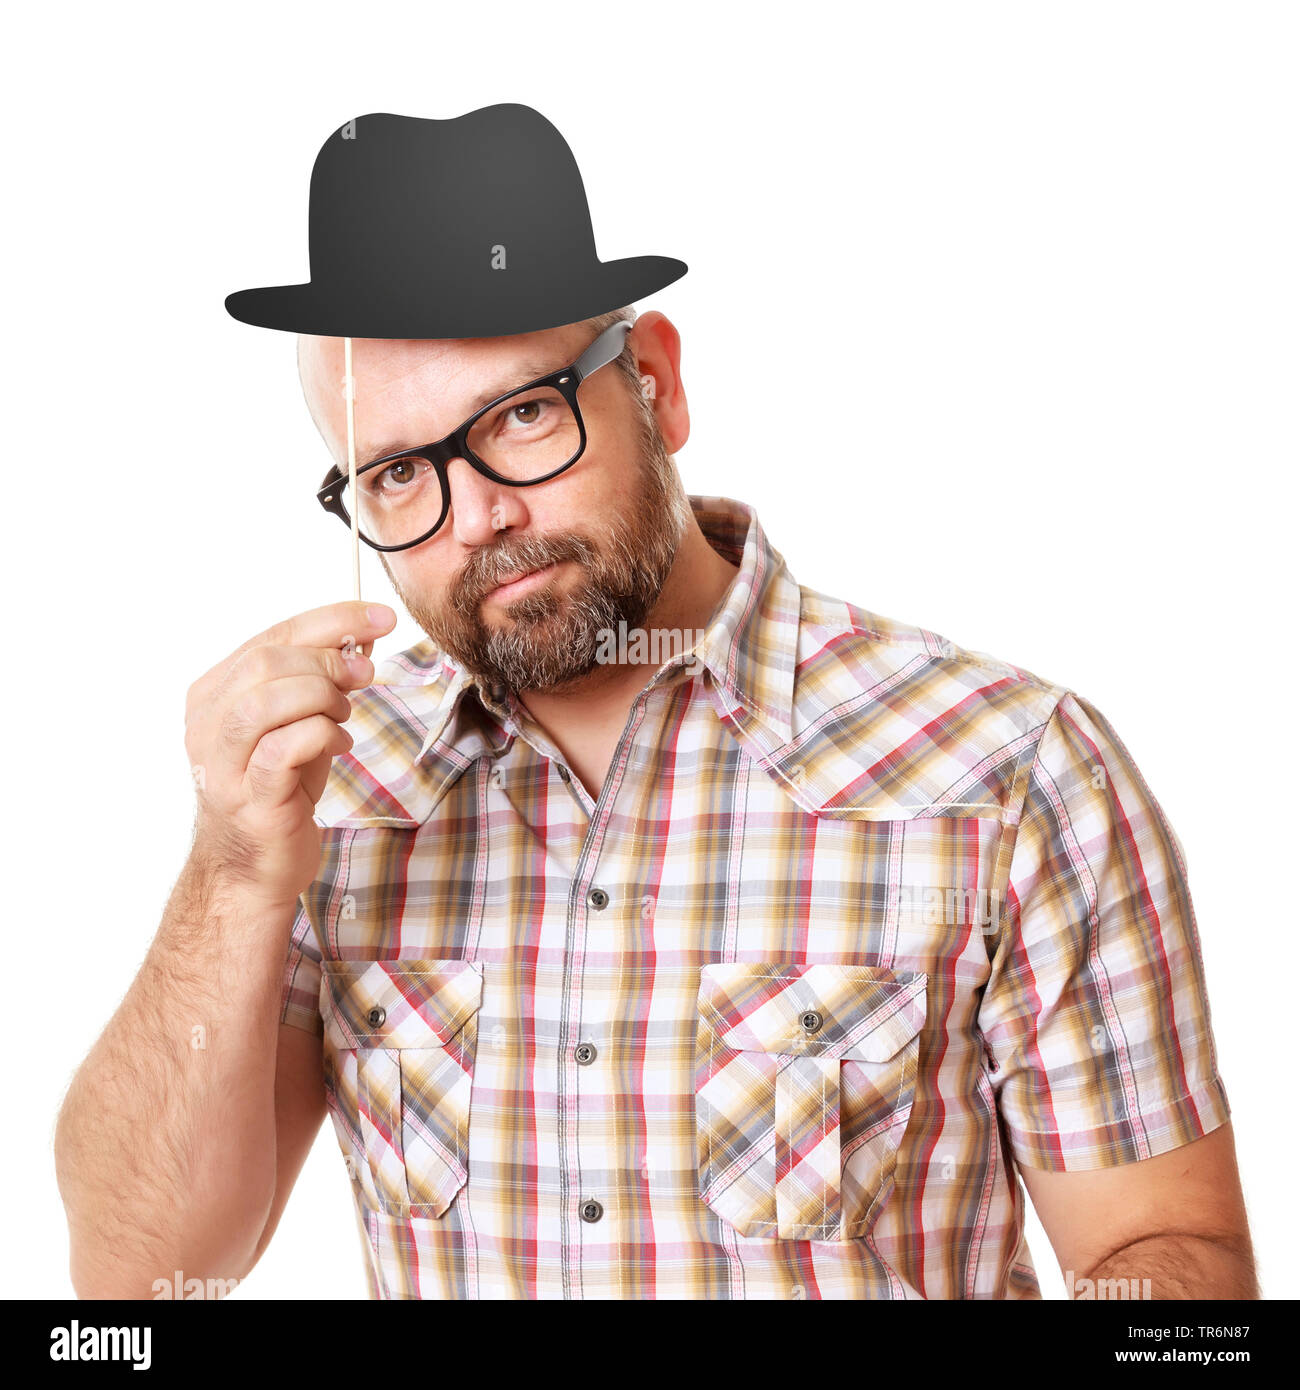 Älterer Mann mit kariertem Hemd und Papier billycock Hut, Deutschland Stockfoto